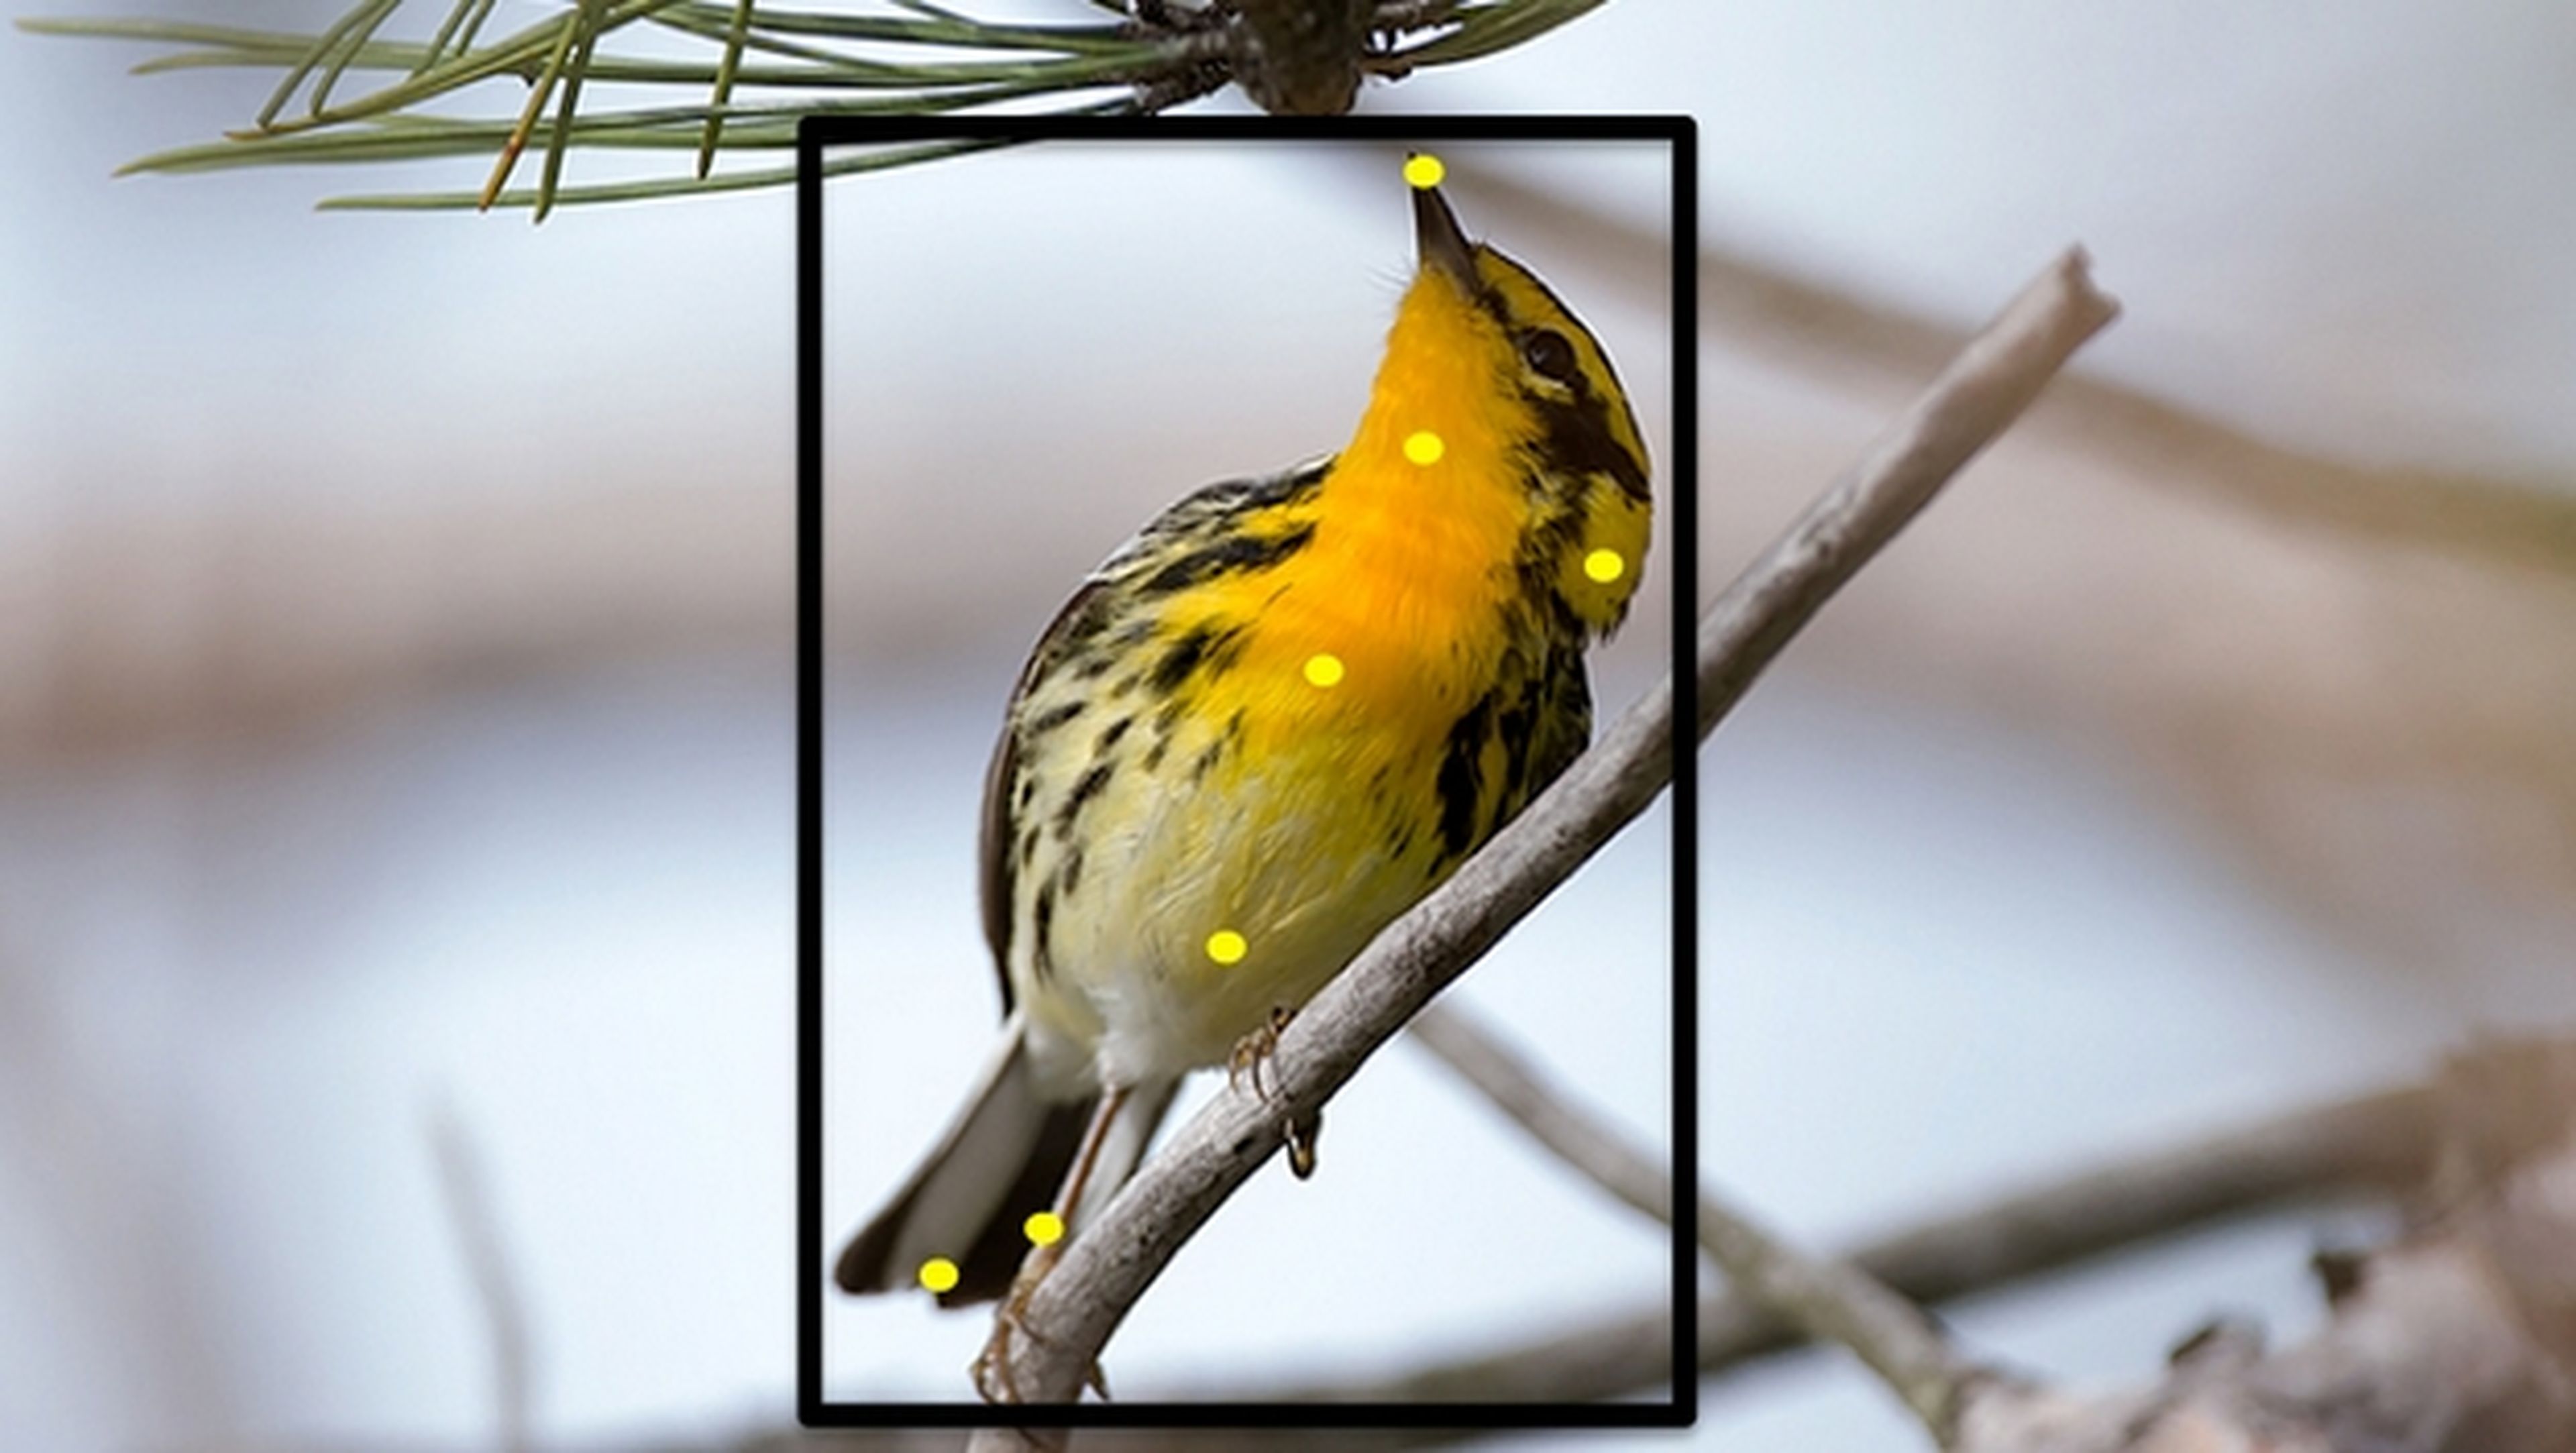 Merlin Bird Photo ID identifica los pájaros que hay en tus fotos.